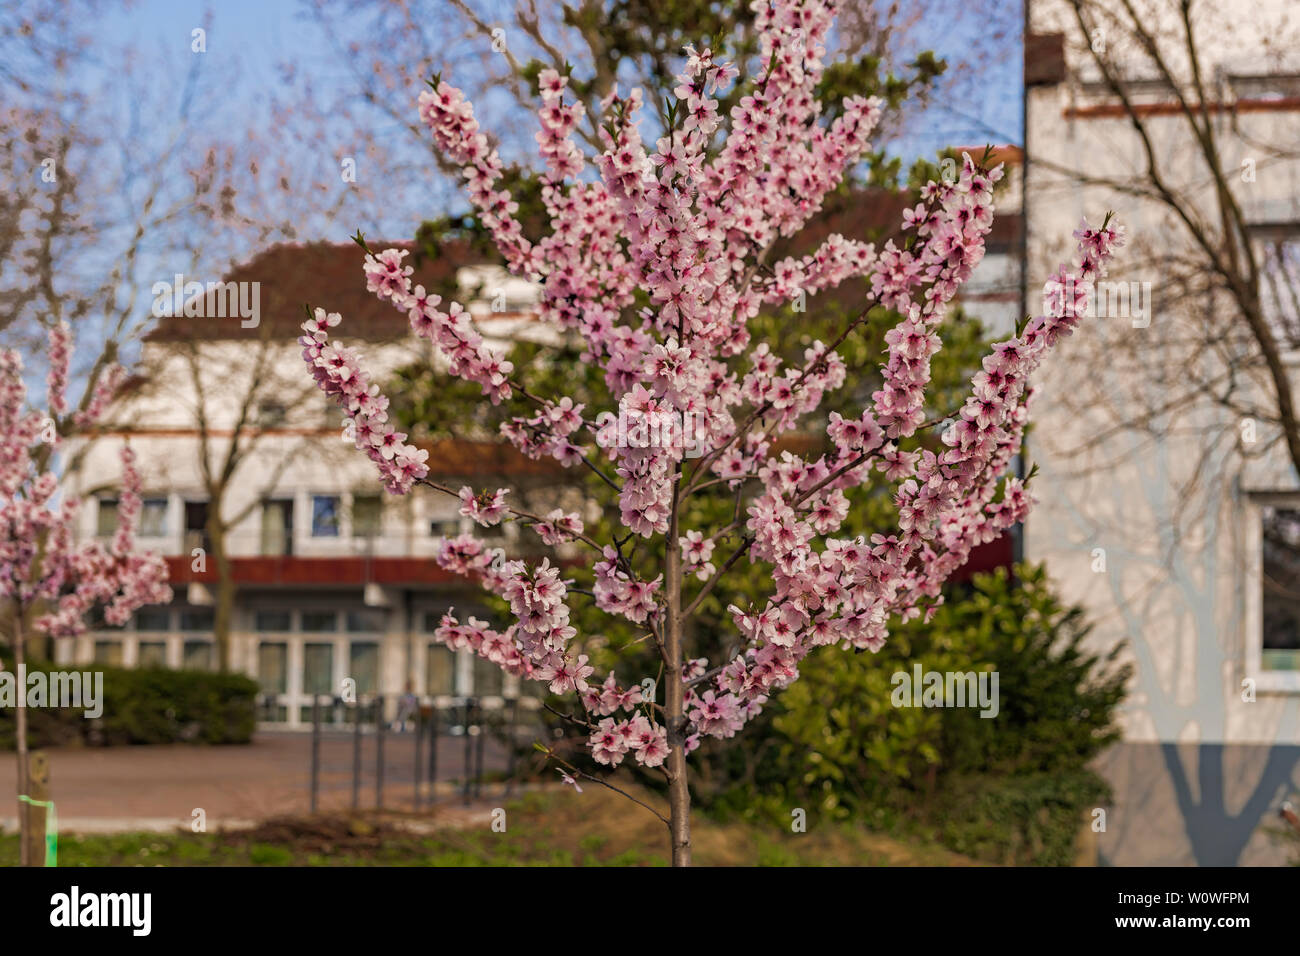 Ein Mandelbaum in voller Blüte. Stock Photo